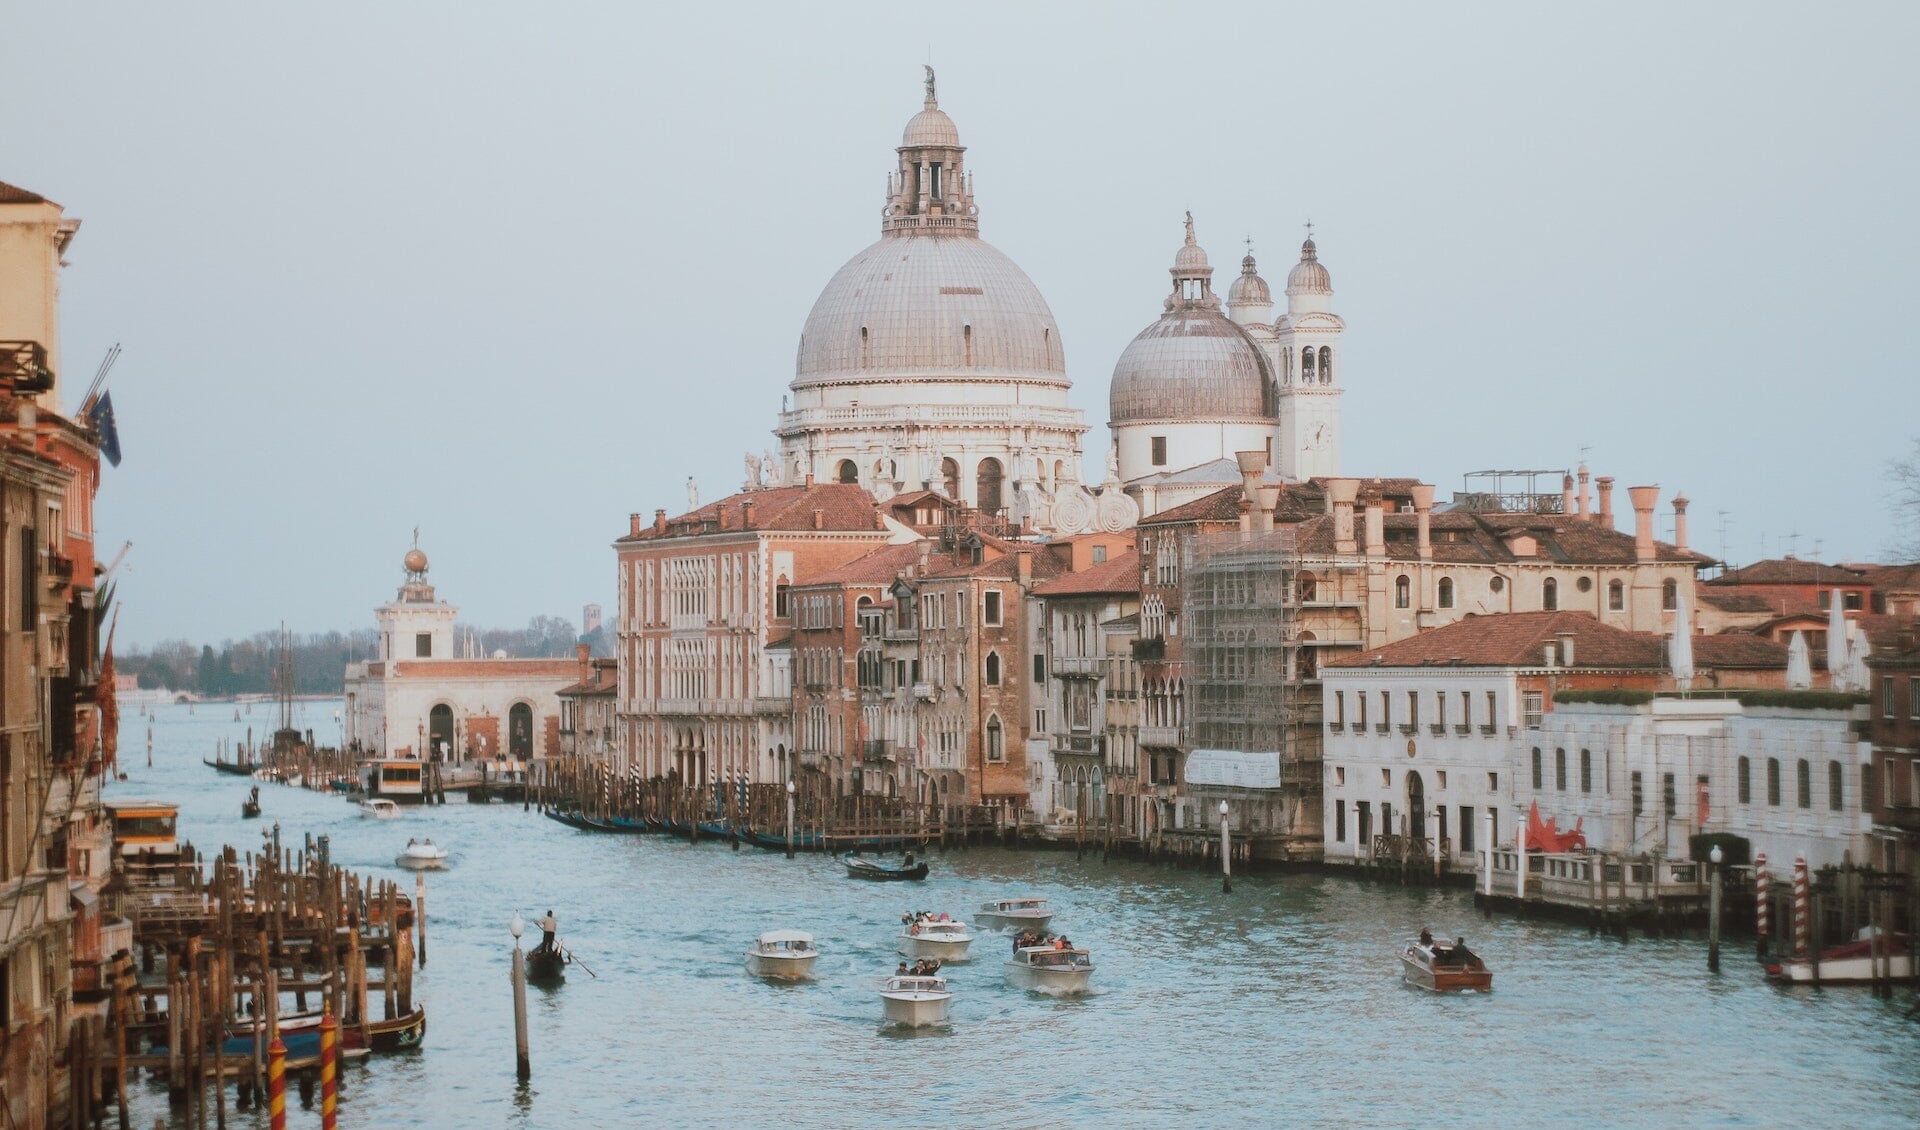 Kunsthistoricus Wouter Maas vertelt uitgebreid over de rijke cultuur van Venetië aan de hand van mooie beelden. 